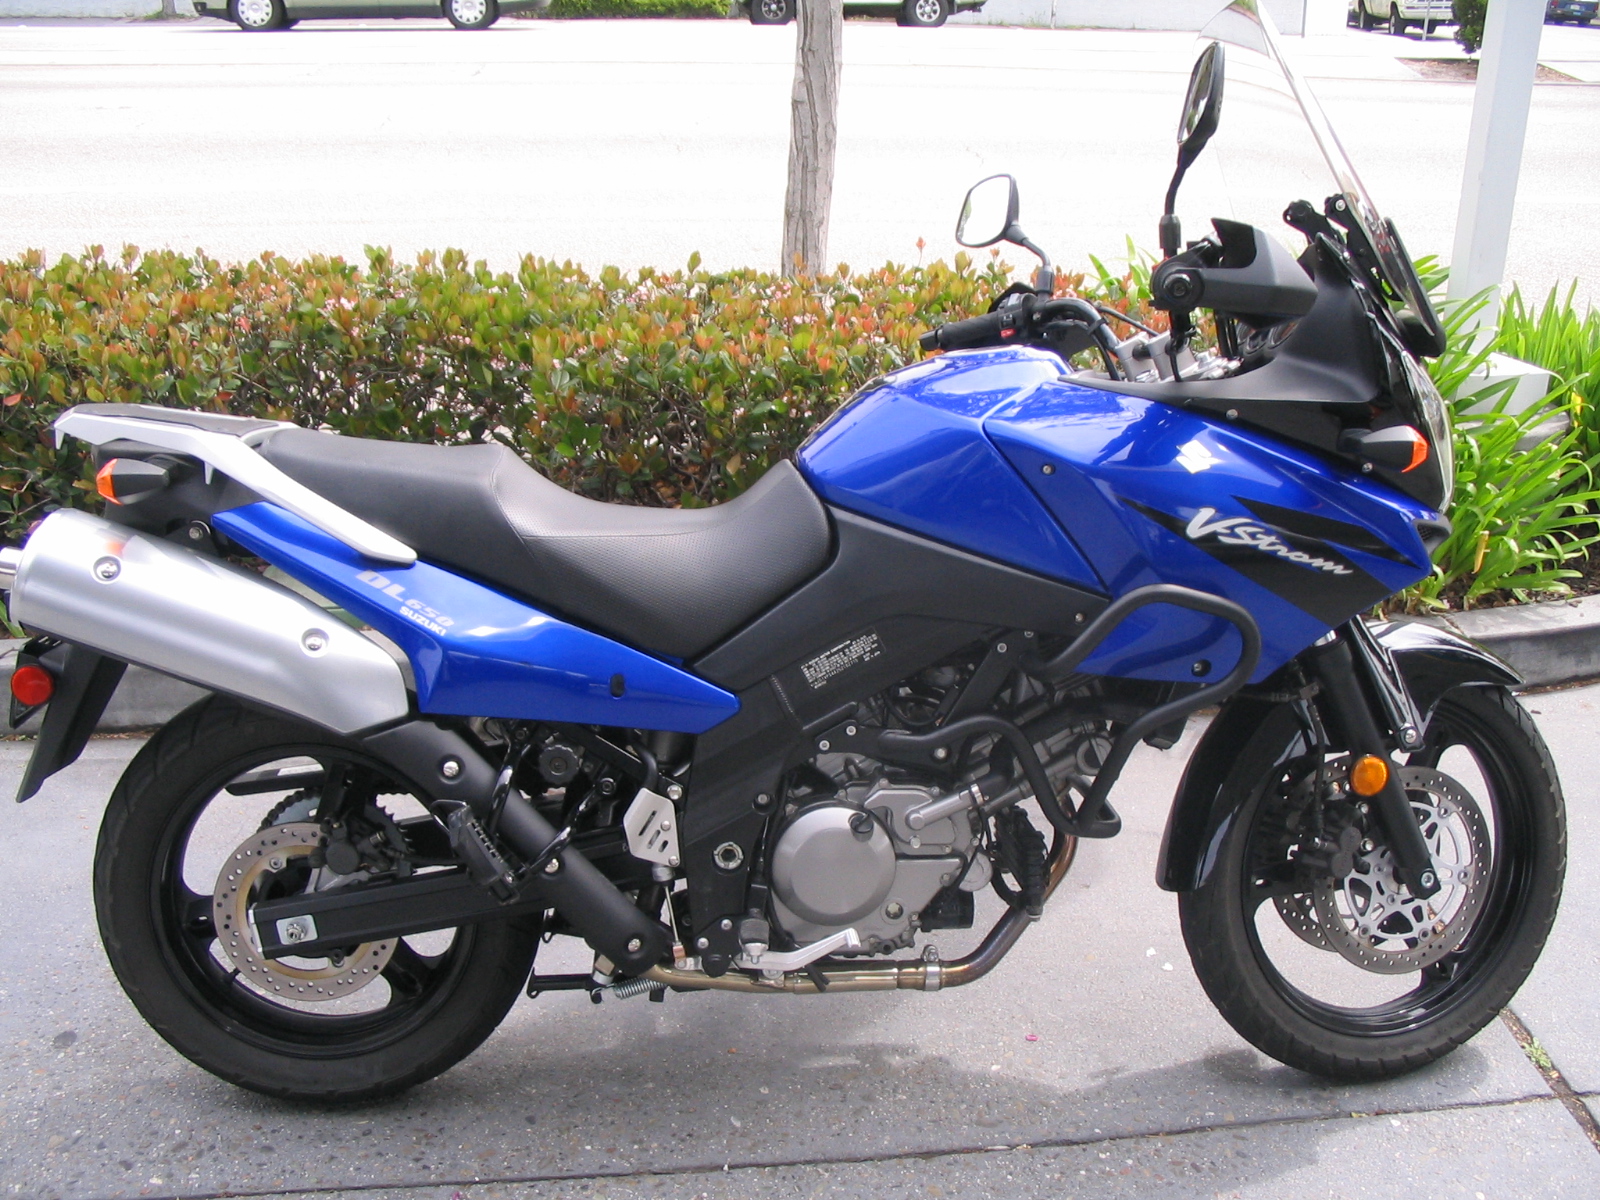 Suzuki_vstrom_dl650_motorcycle.jpg